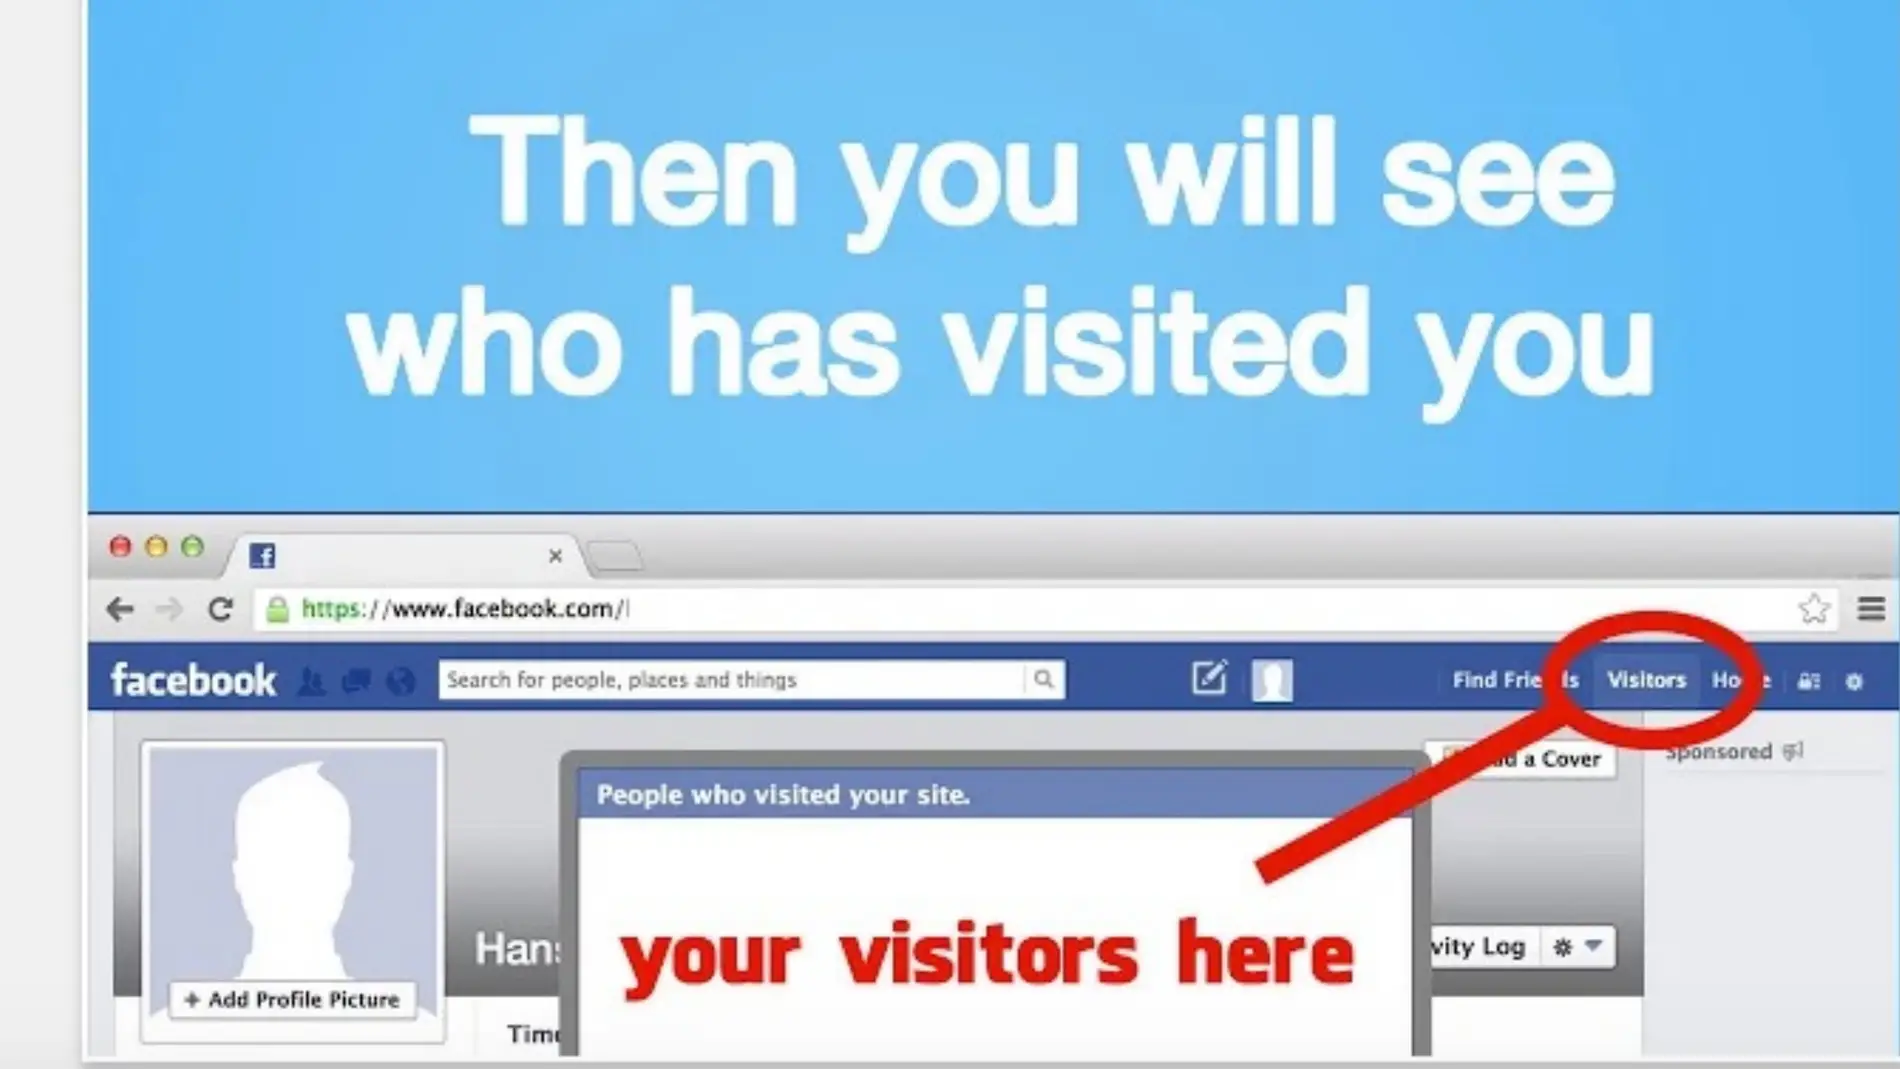 Que no te engañen. Facebook no permite el acceso a aplicaciones del tipo “mira quien visita tu perfil”